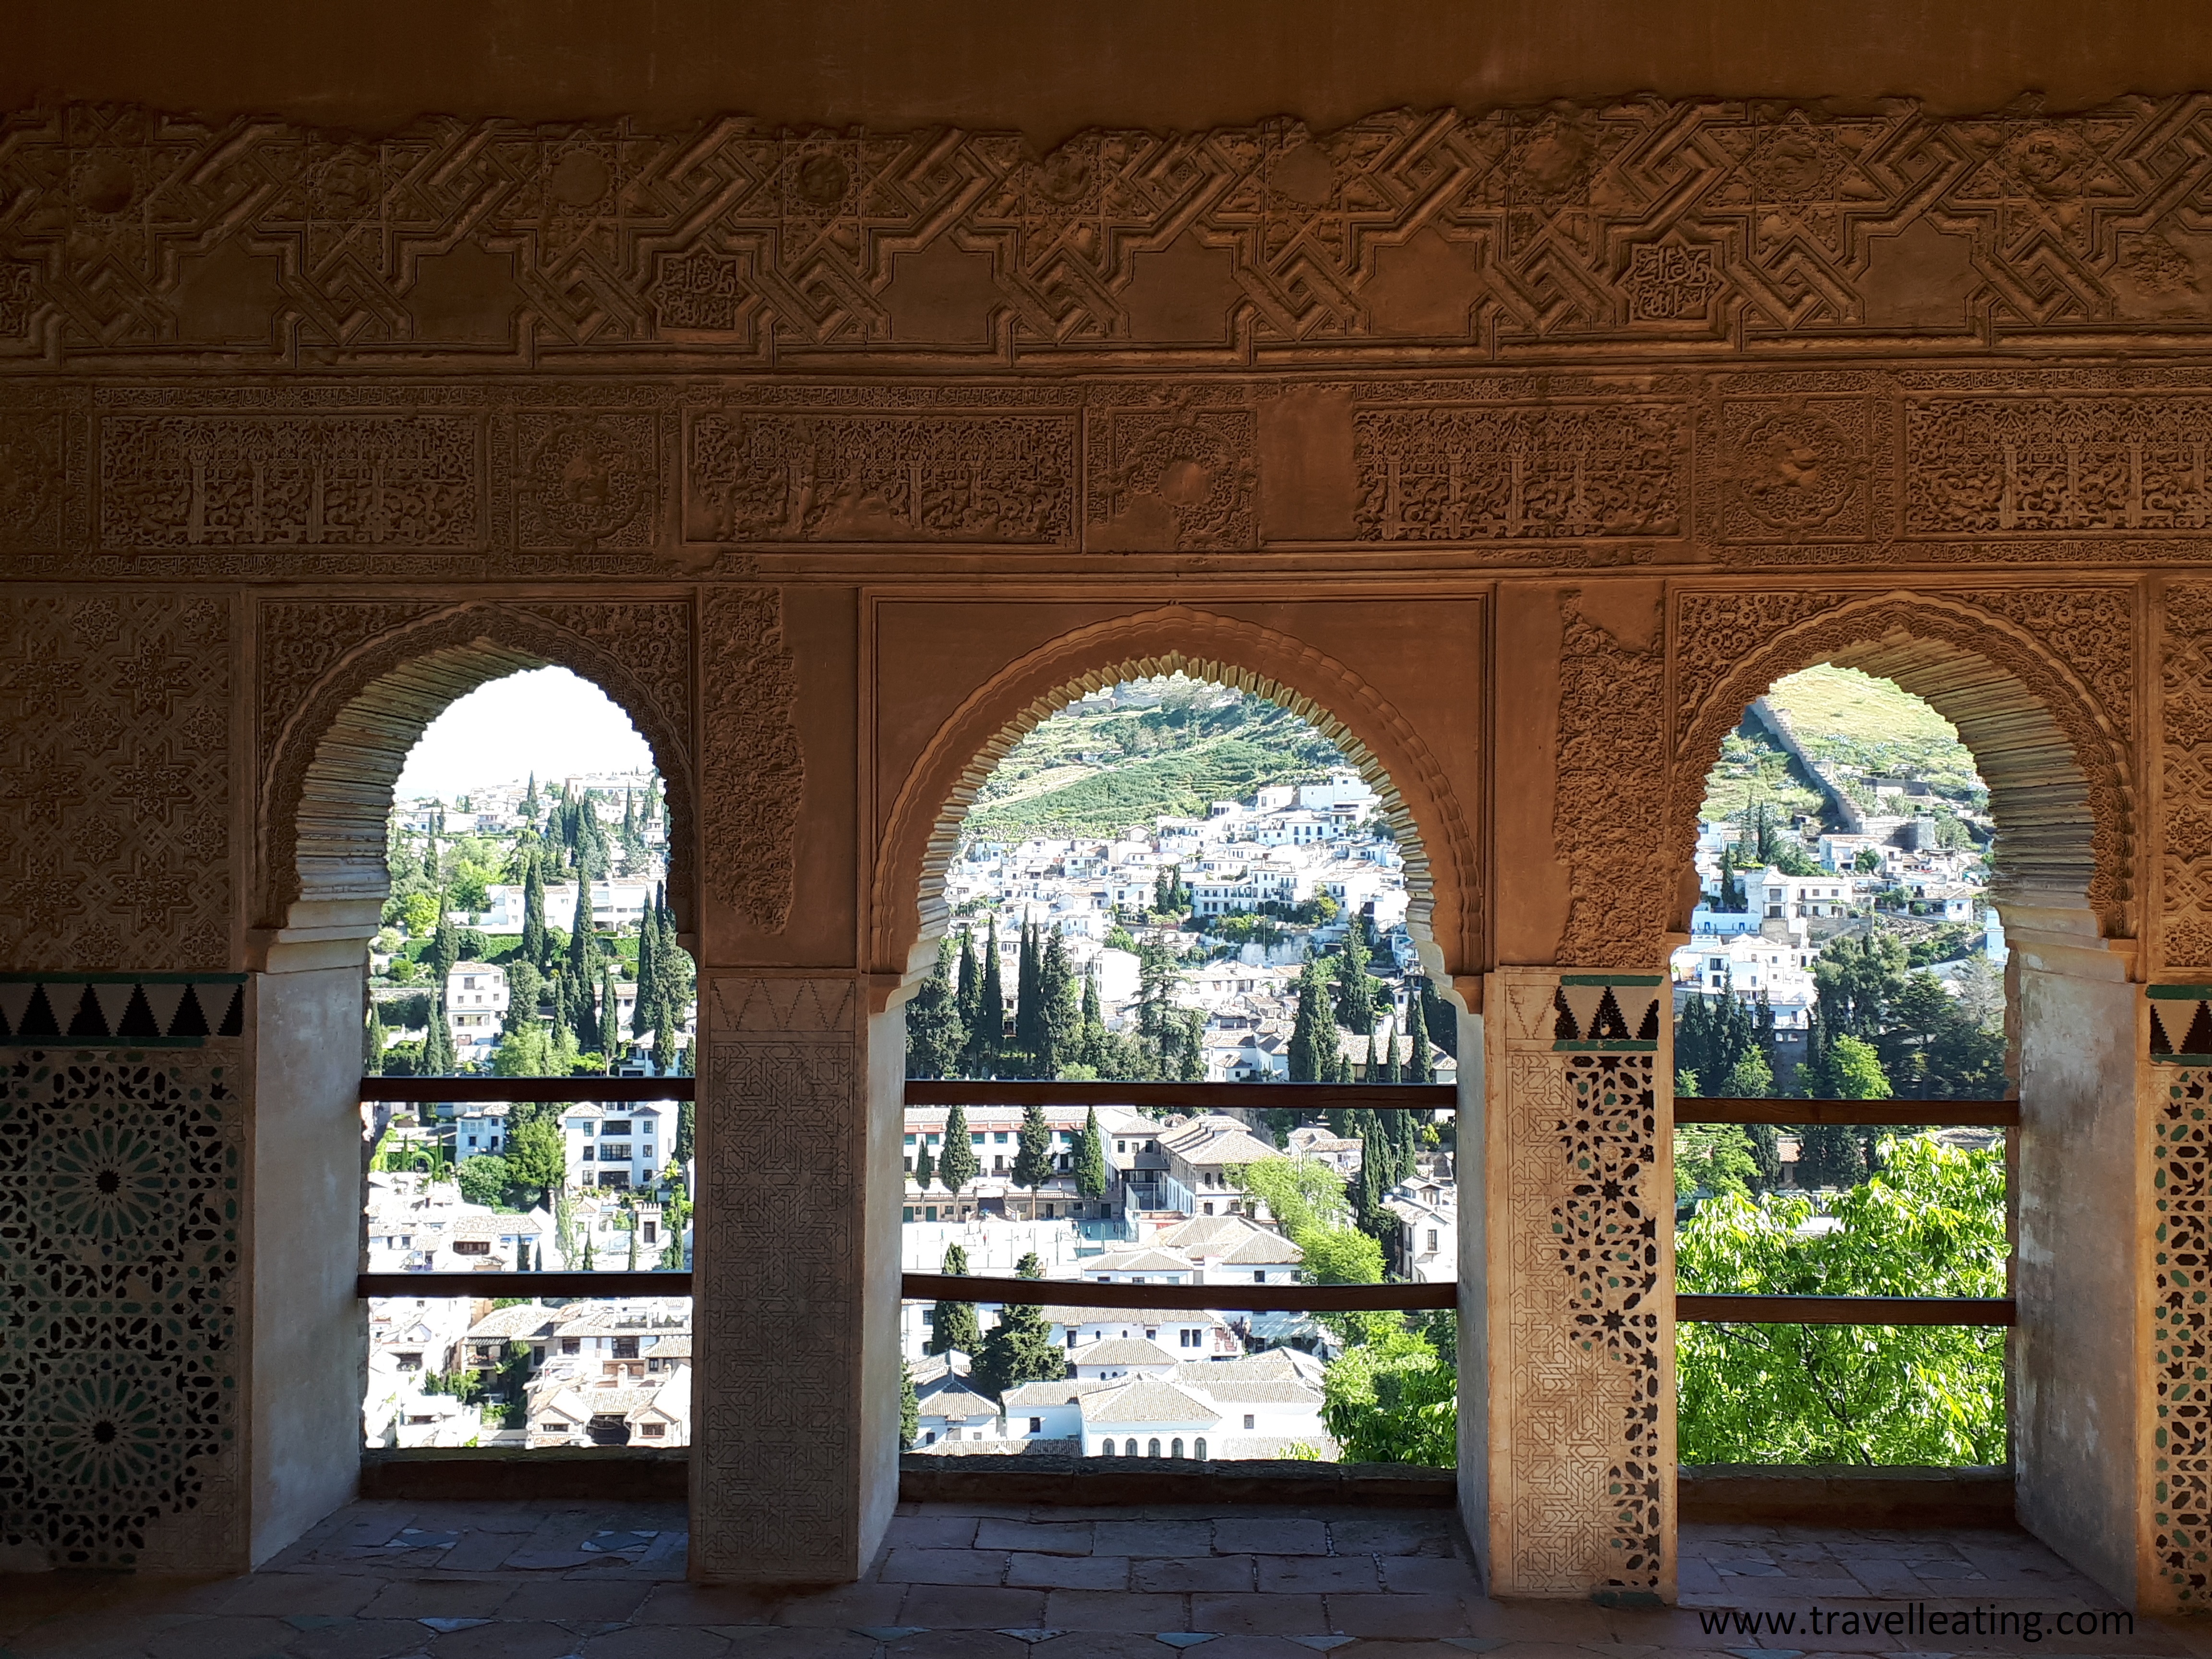 Ventanas de la Alhambra, uno de los imprescindibles de Granada, con vistas al barrio de Albaicín.